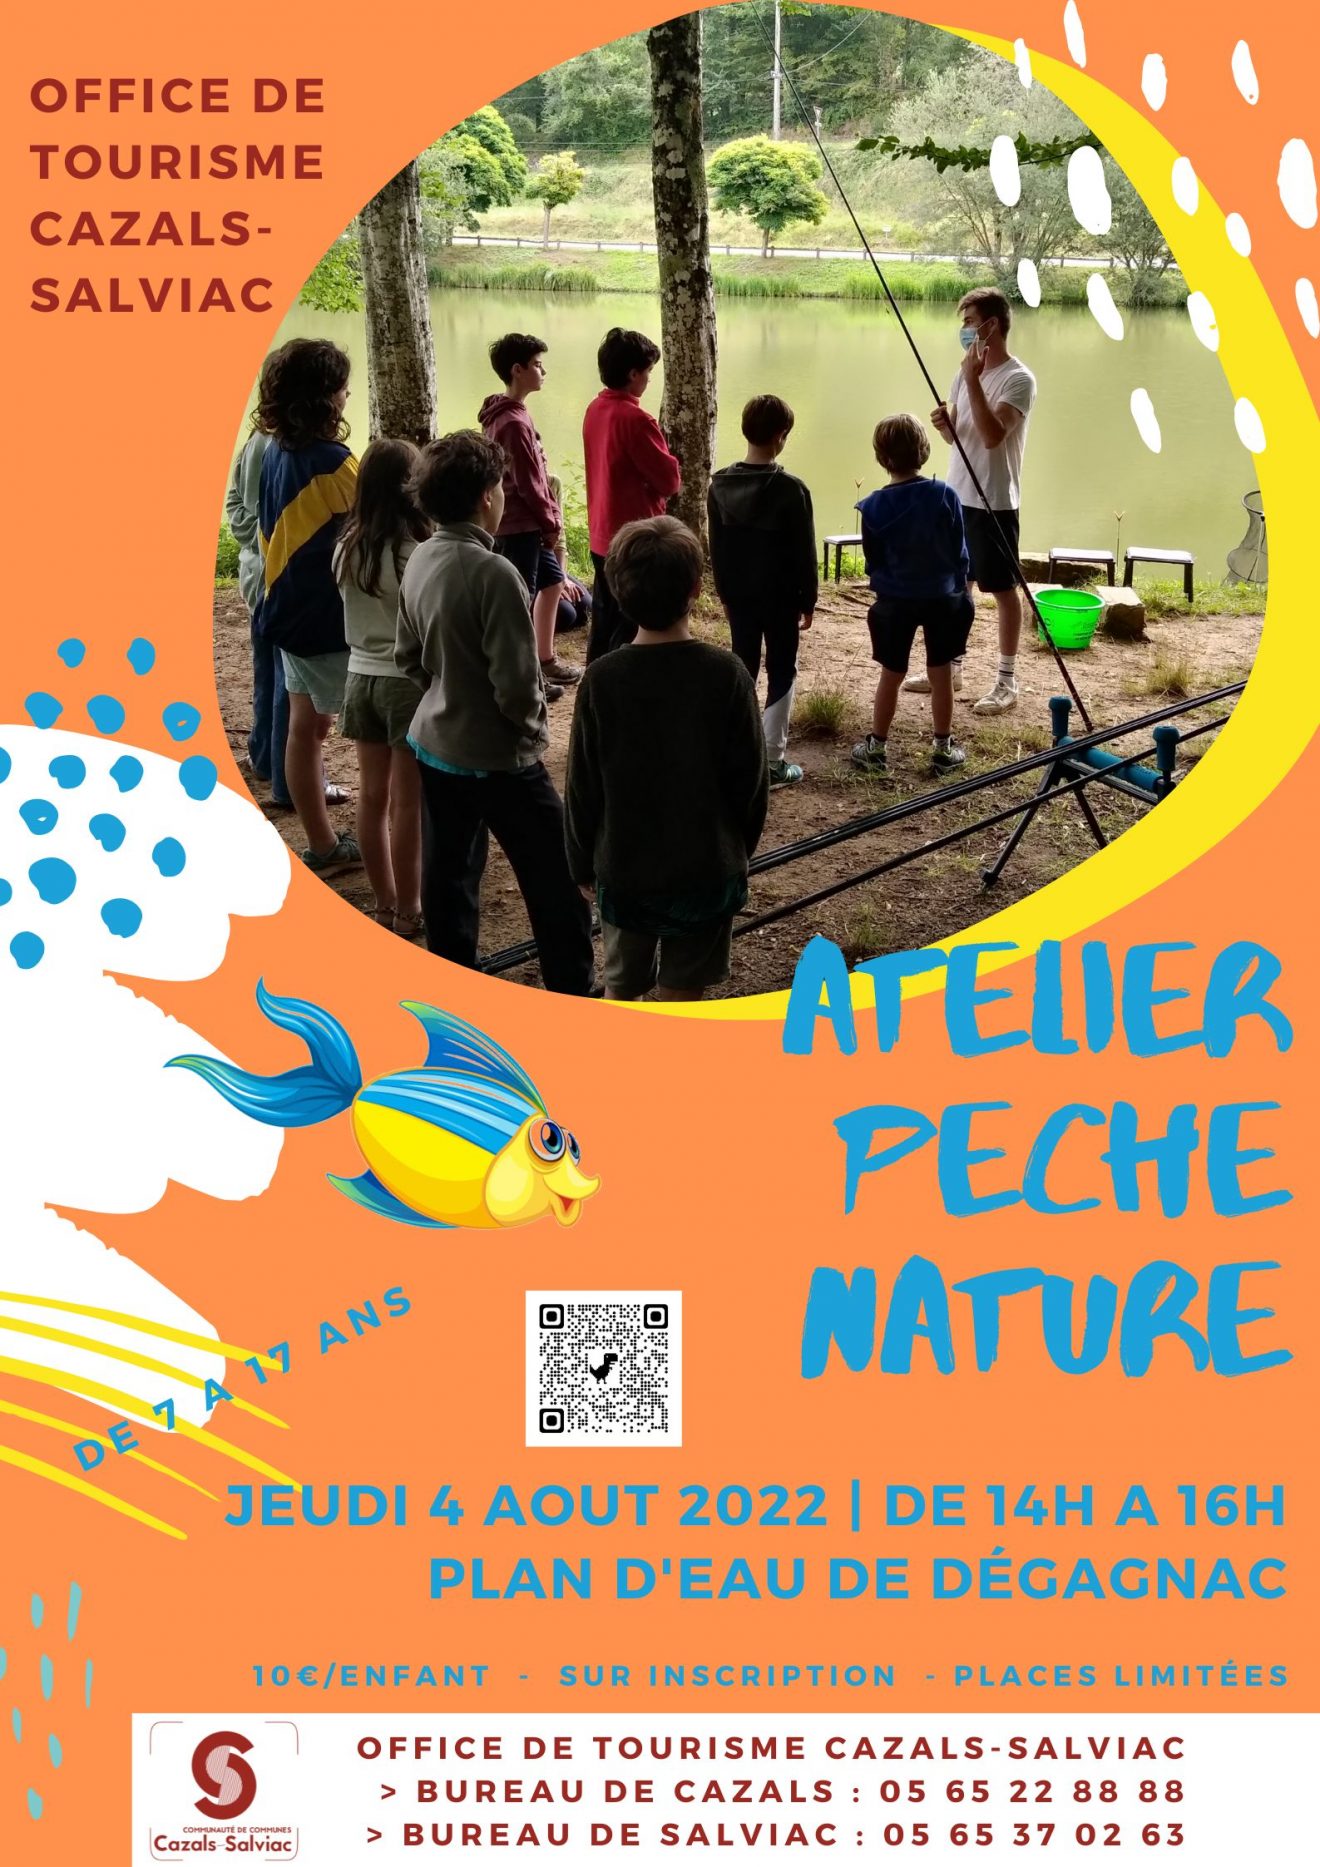 Atelier pêche nature enfants à Dégagnac le 4 aout 22